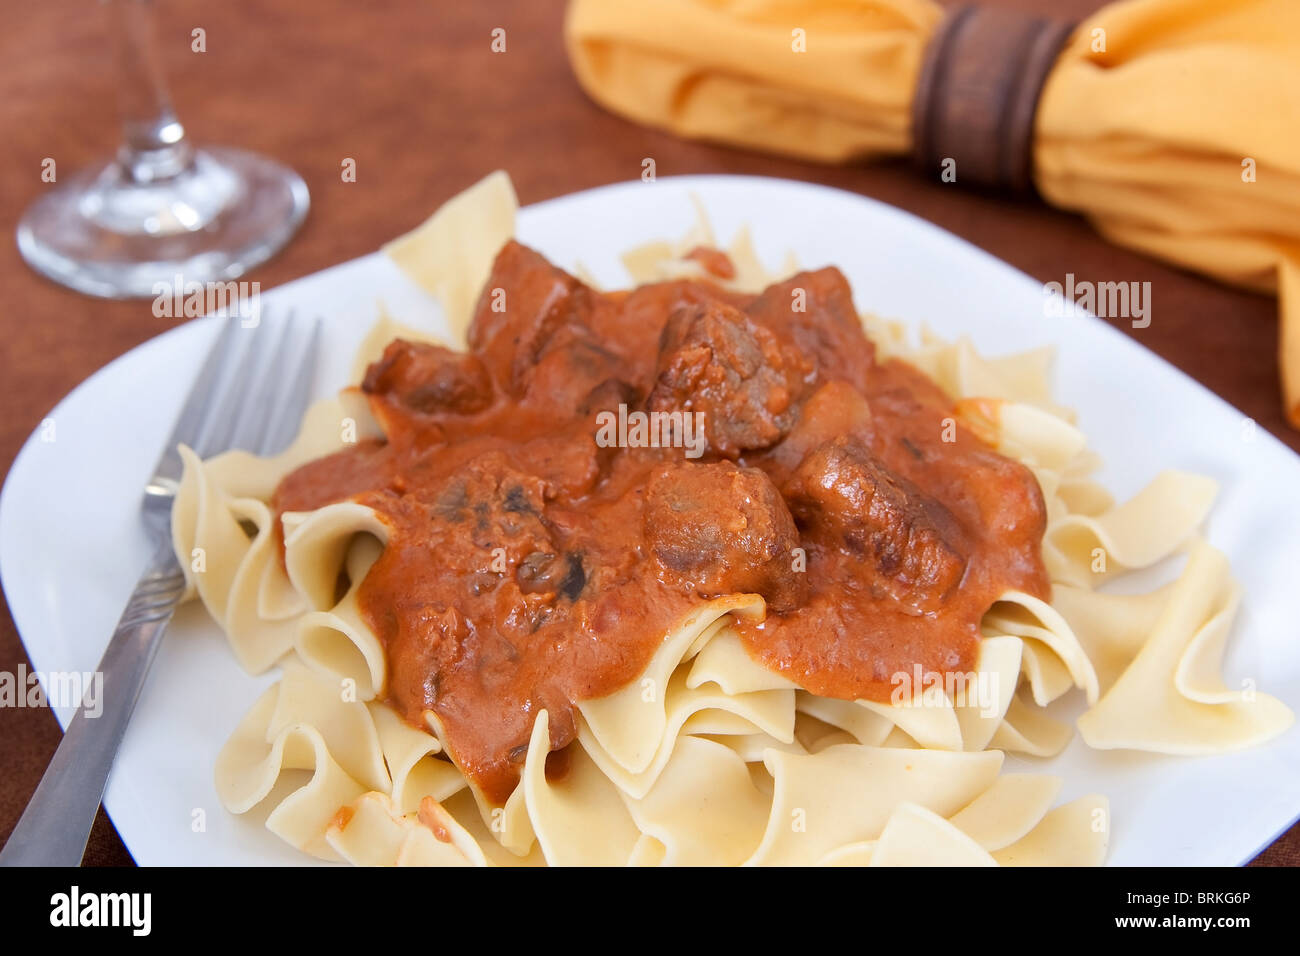 Piatto di carne bovina in casa stroganoff su tagliatelle con stoviglie Foto Stock